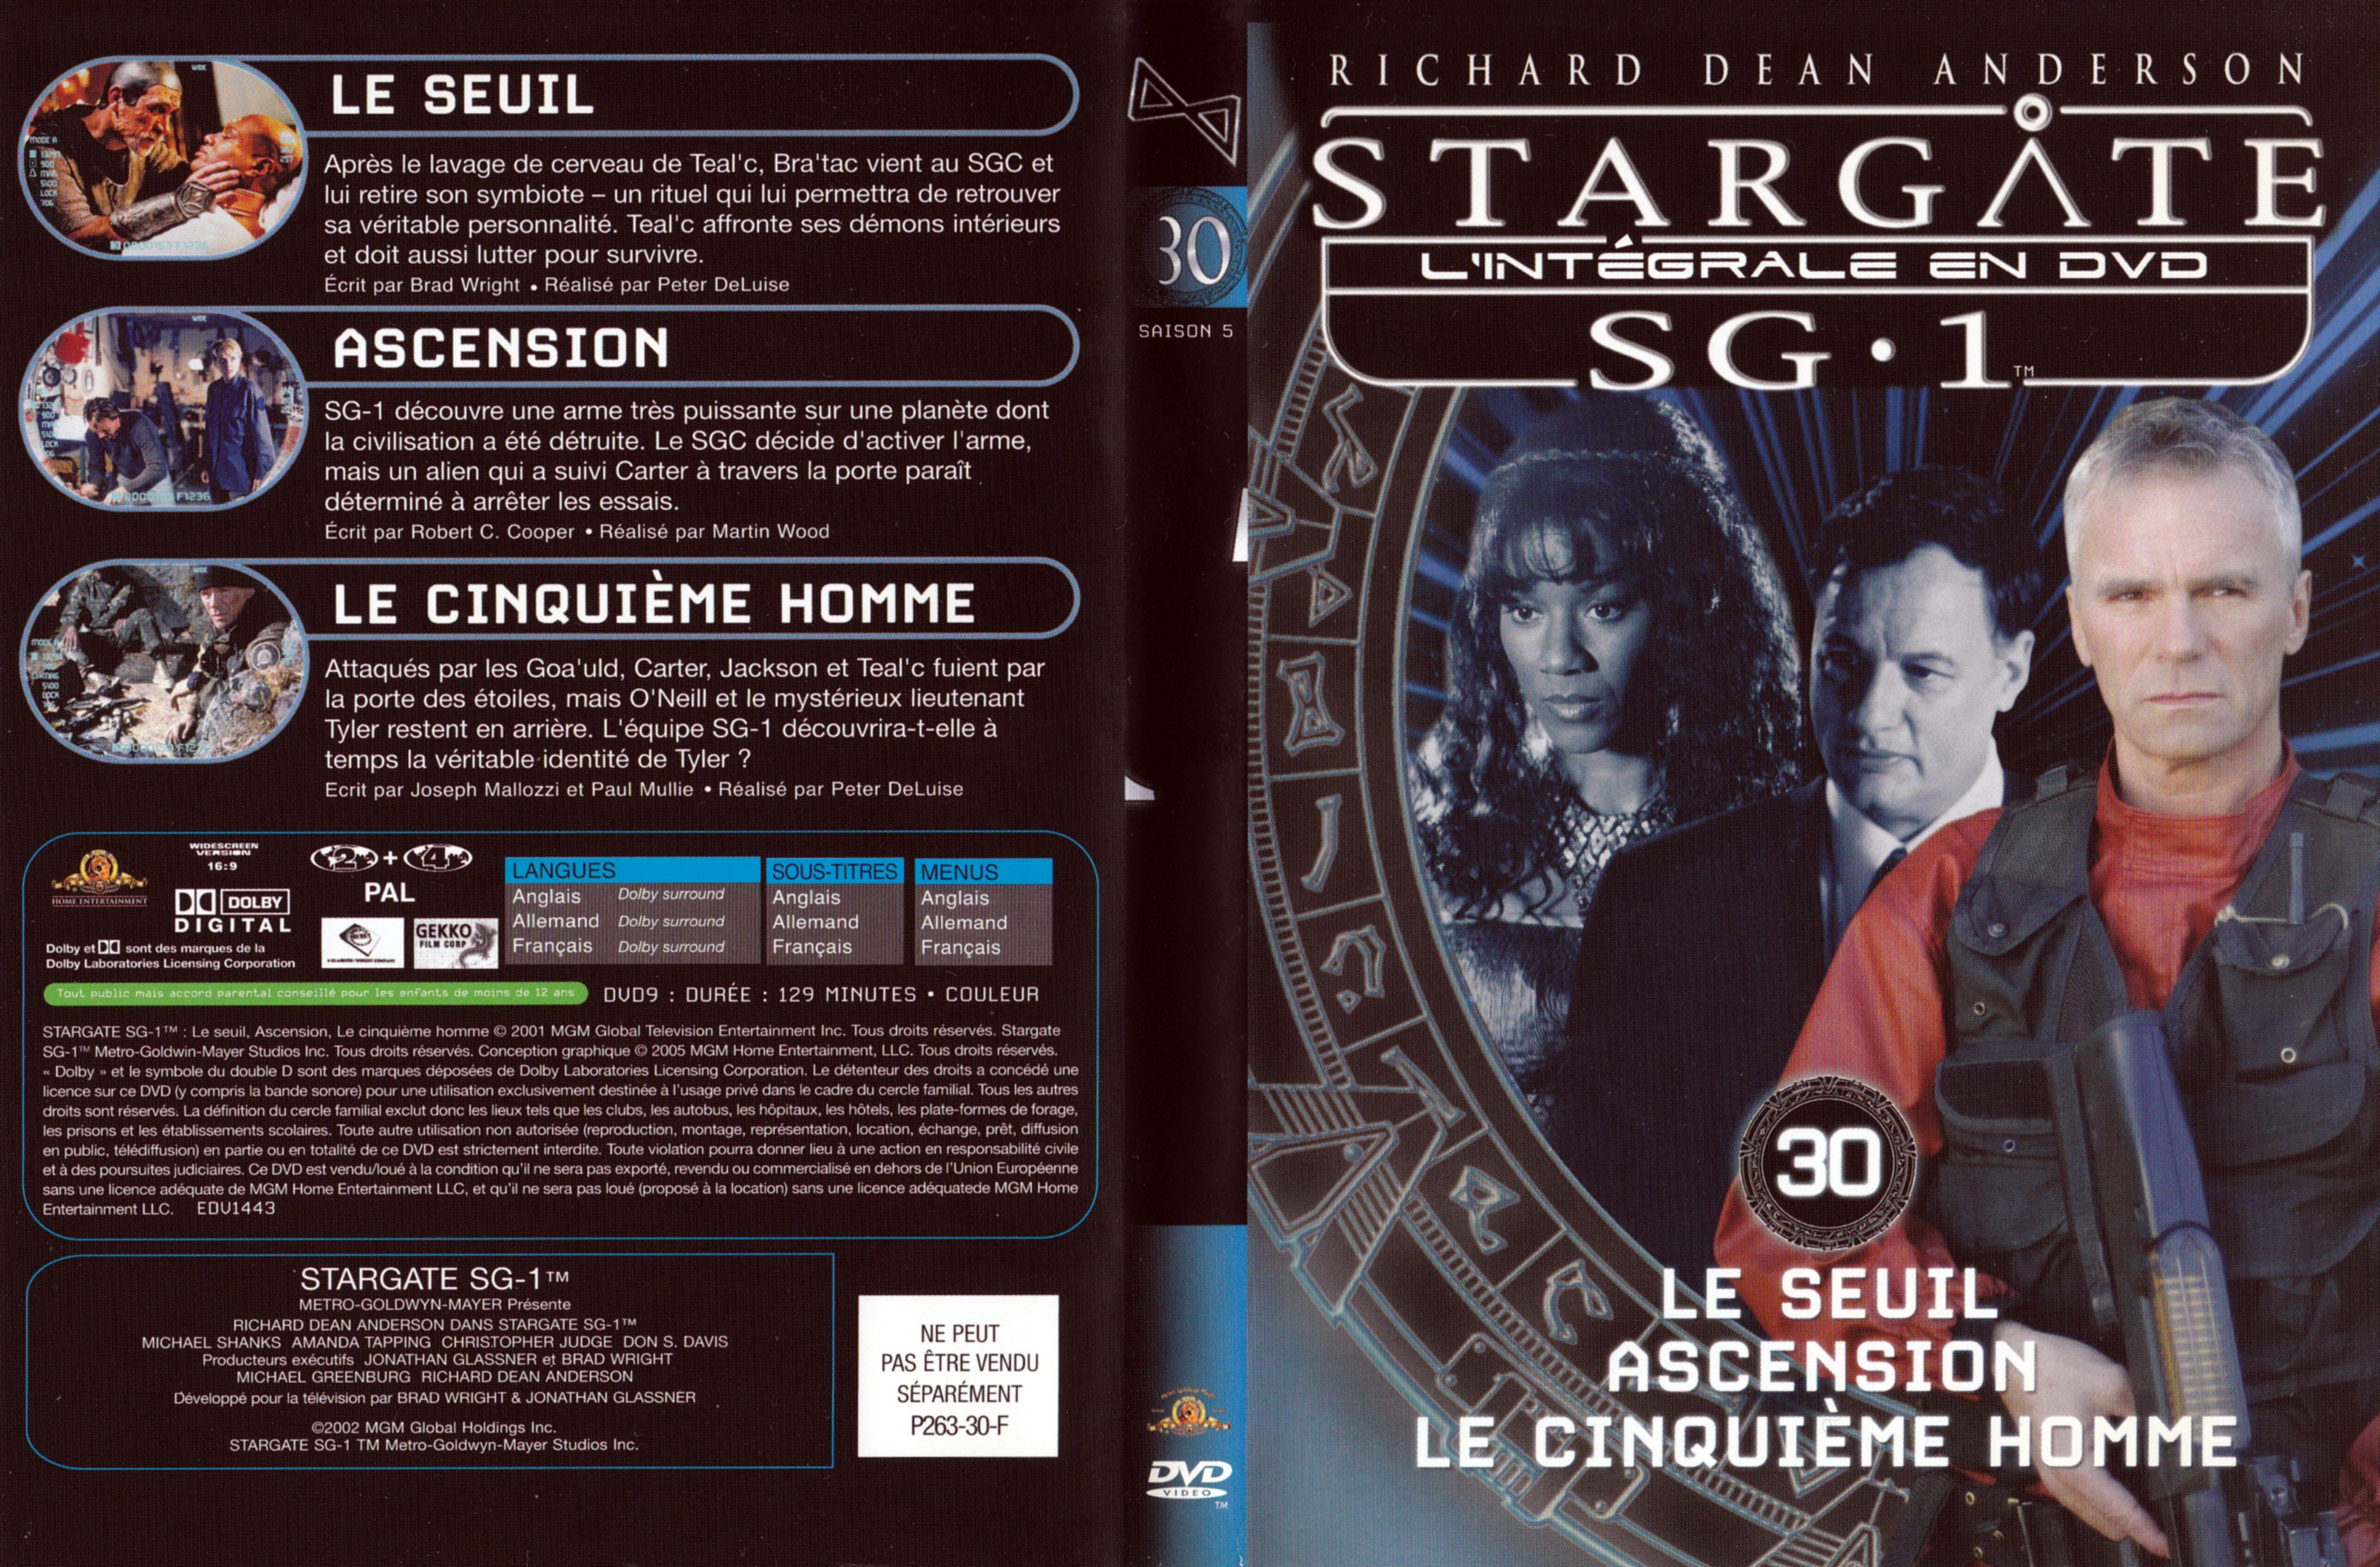 Jaquette DVD Stargate SG1 Intgrale Saison 5 vol 30